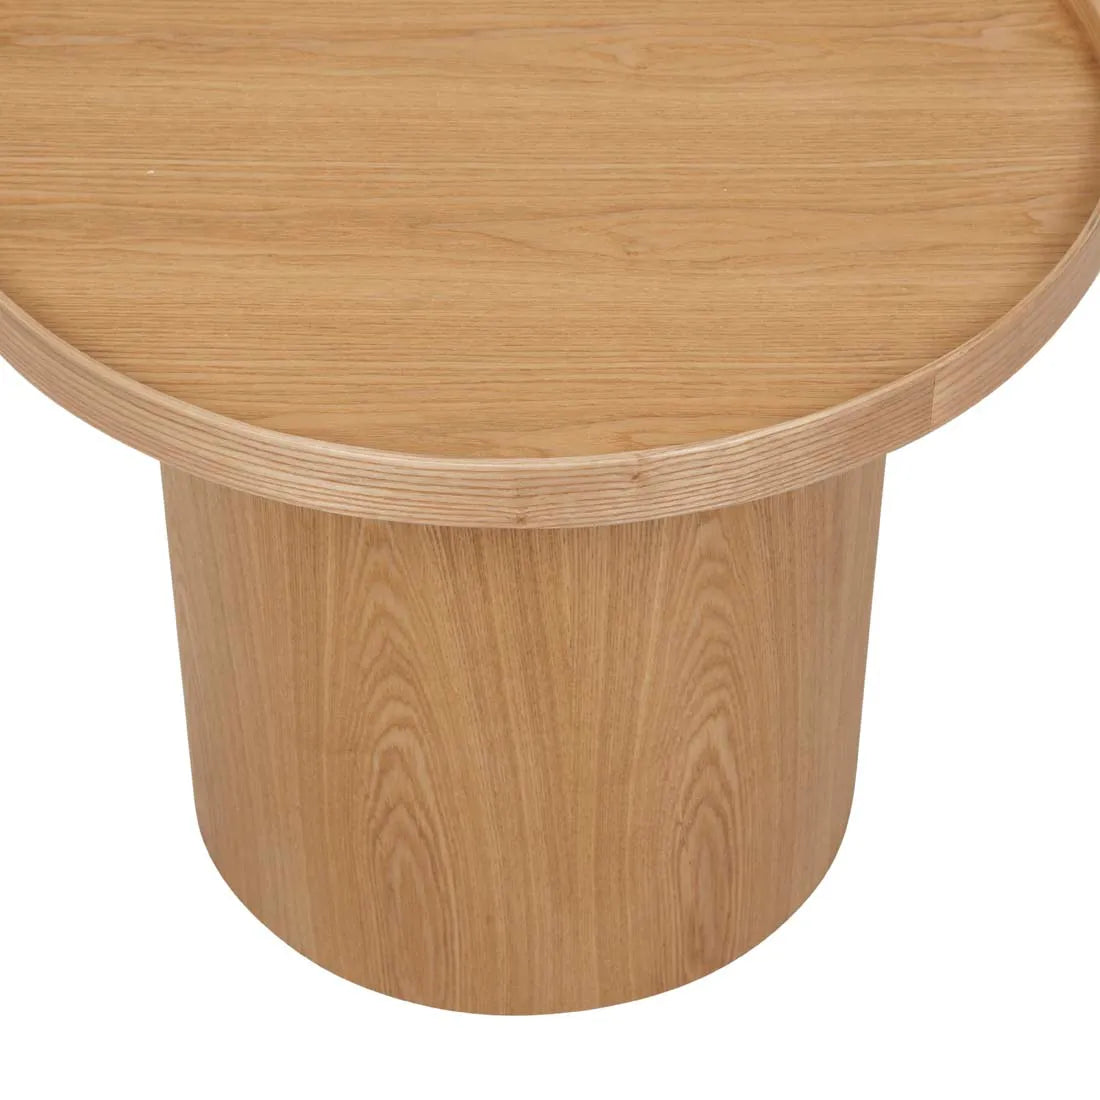 Classique Pedestal Side Table - Natural Ash